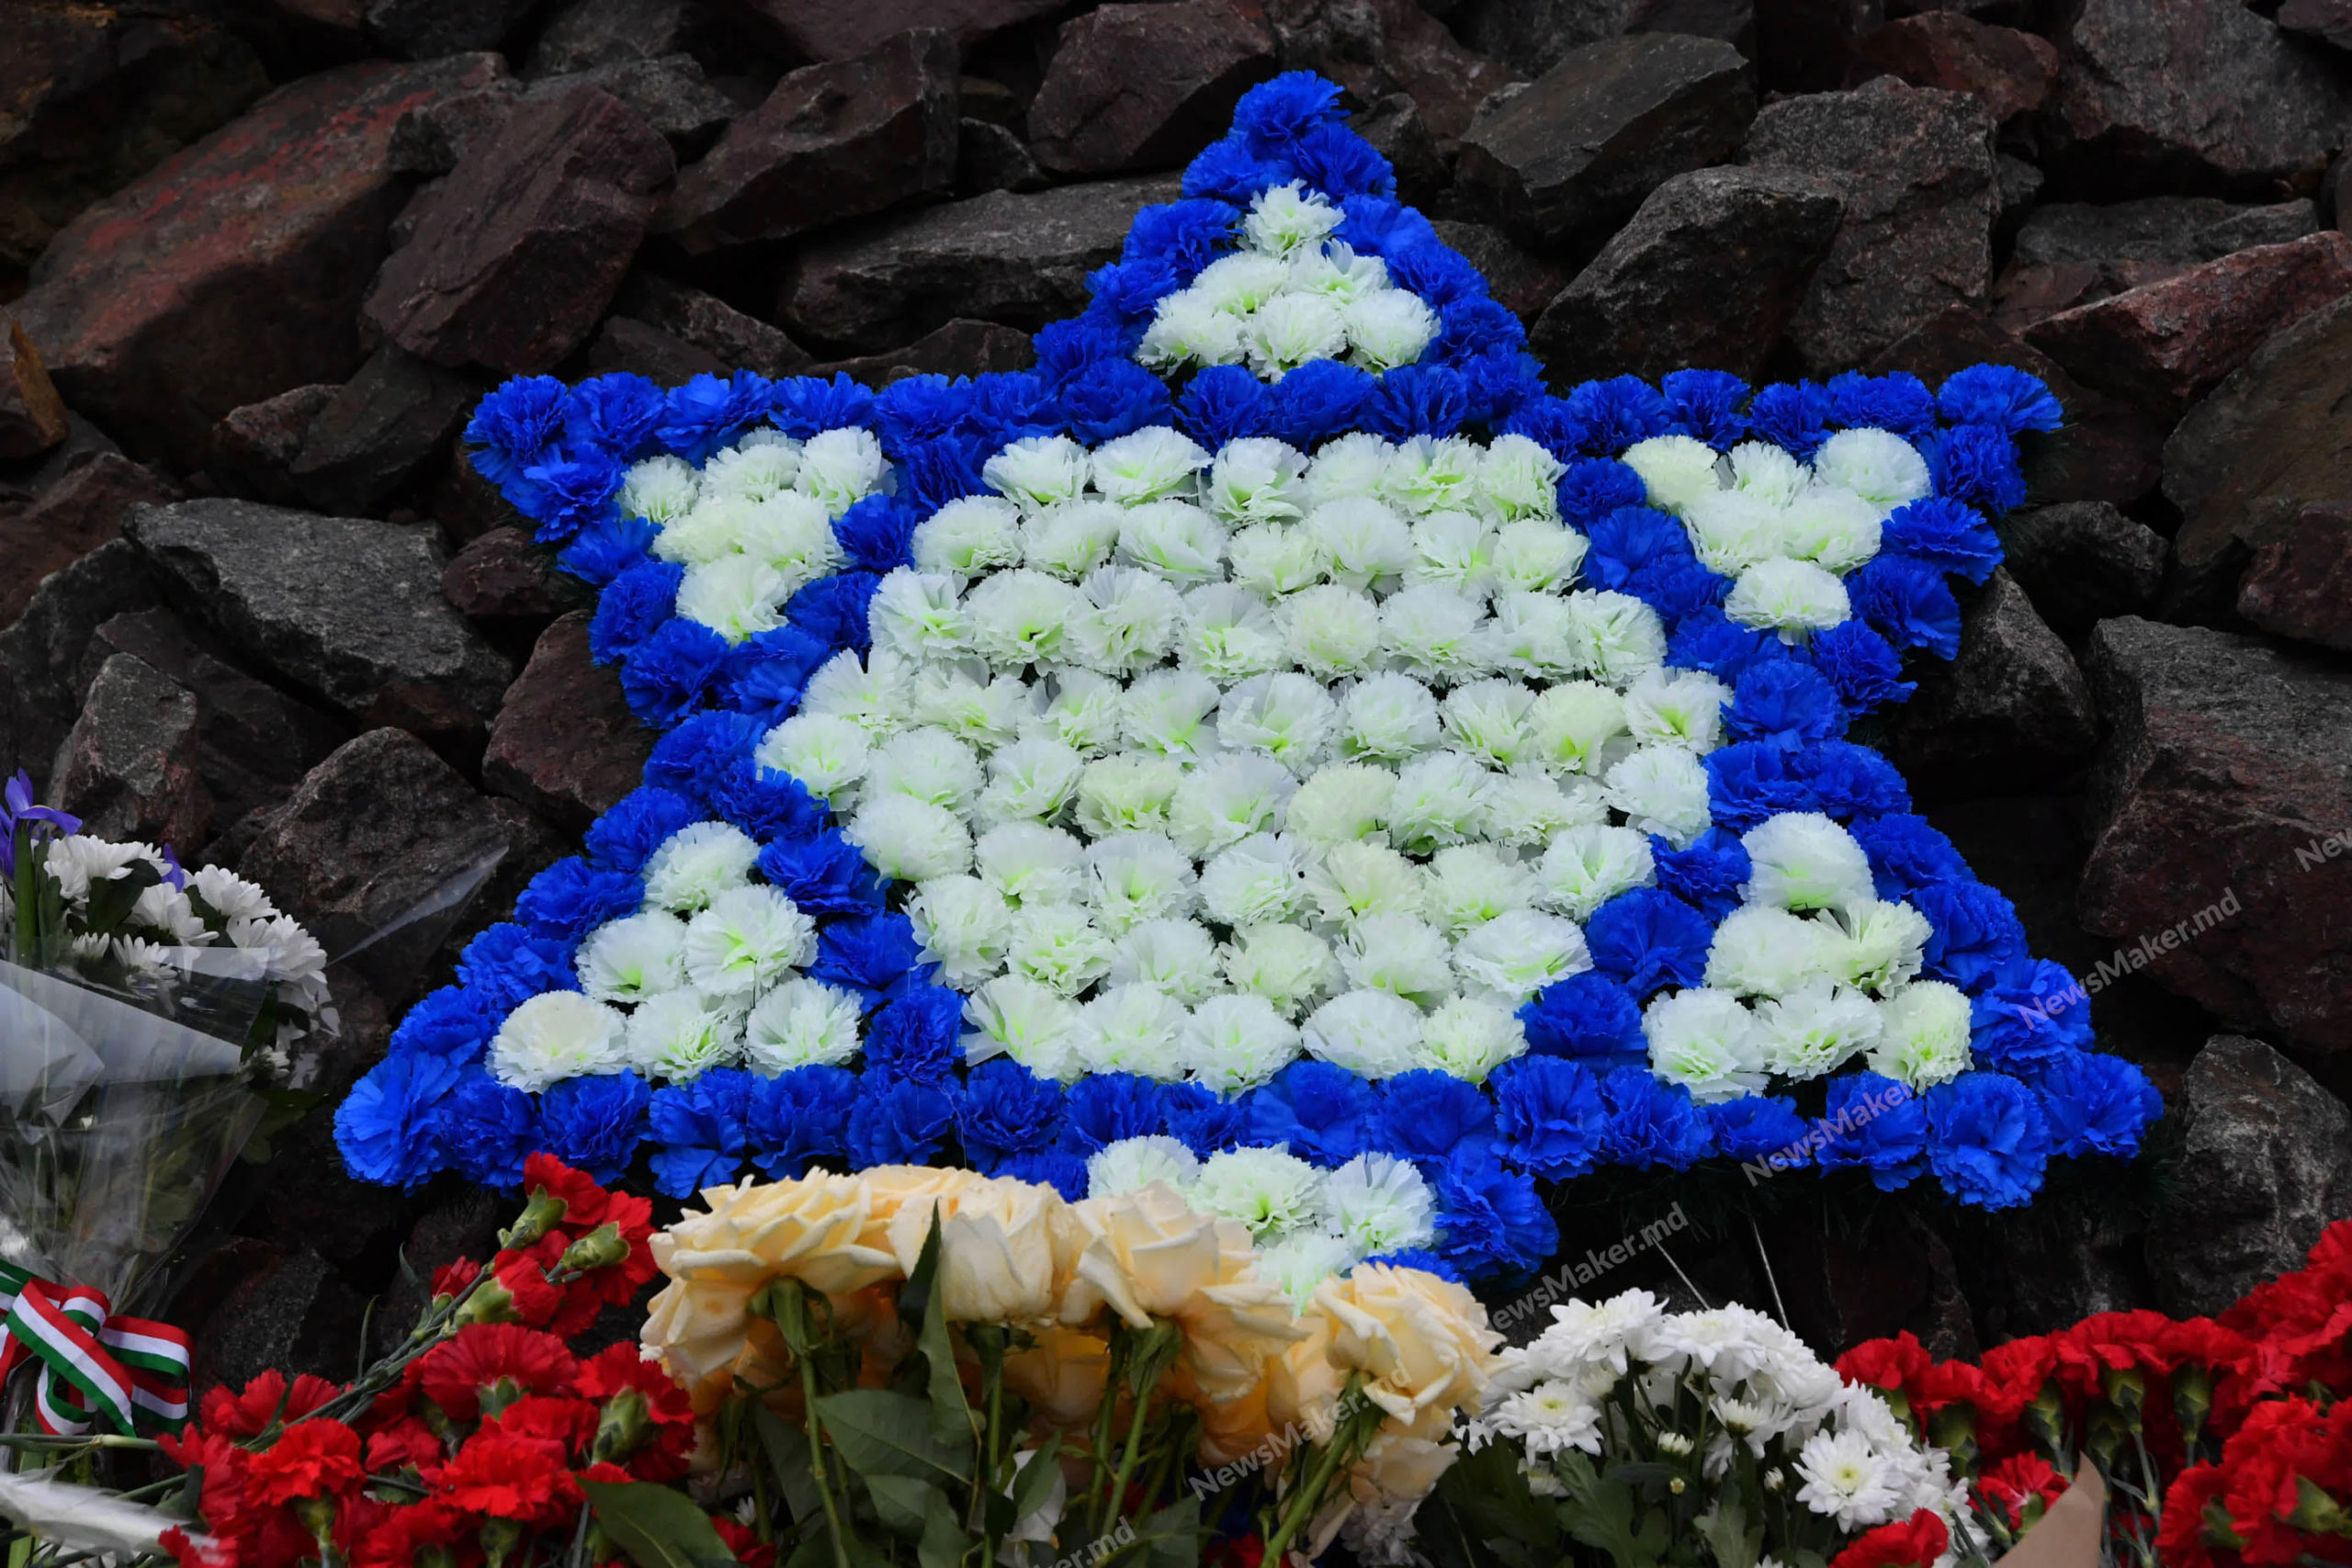 В Кишиневе почтили память жертв Холокоста. Фоторепортаж NM